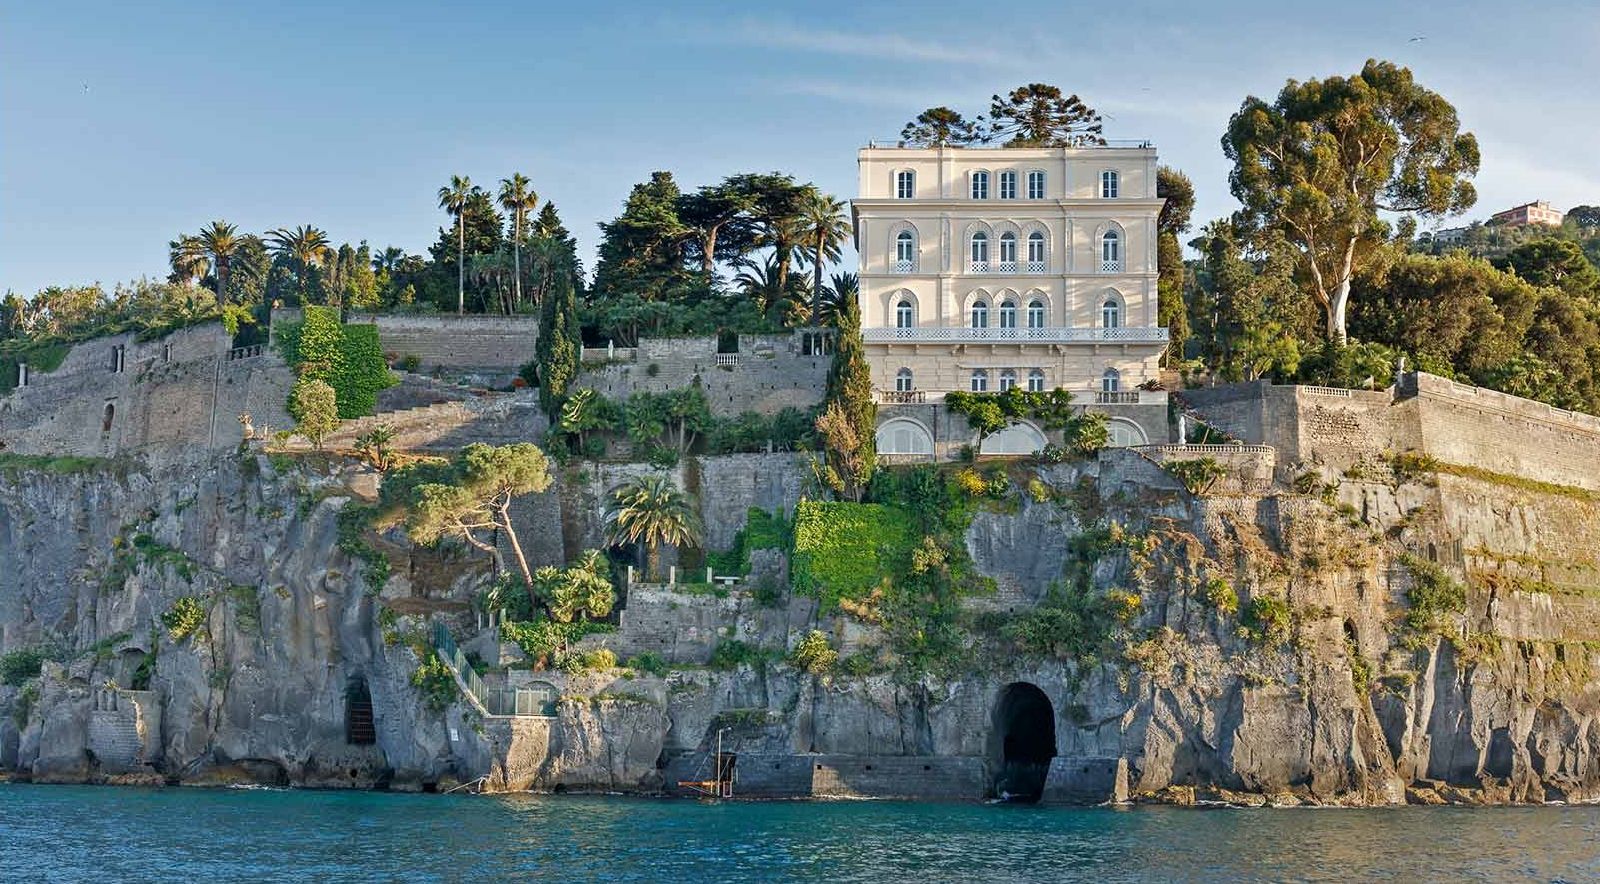 Cliffside location of Villa Astor Amalfi Italy